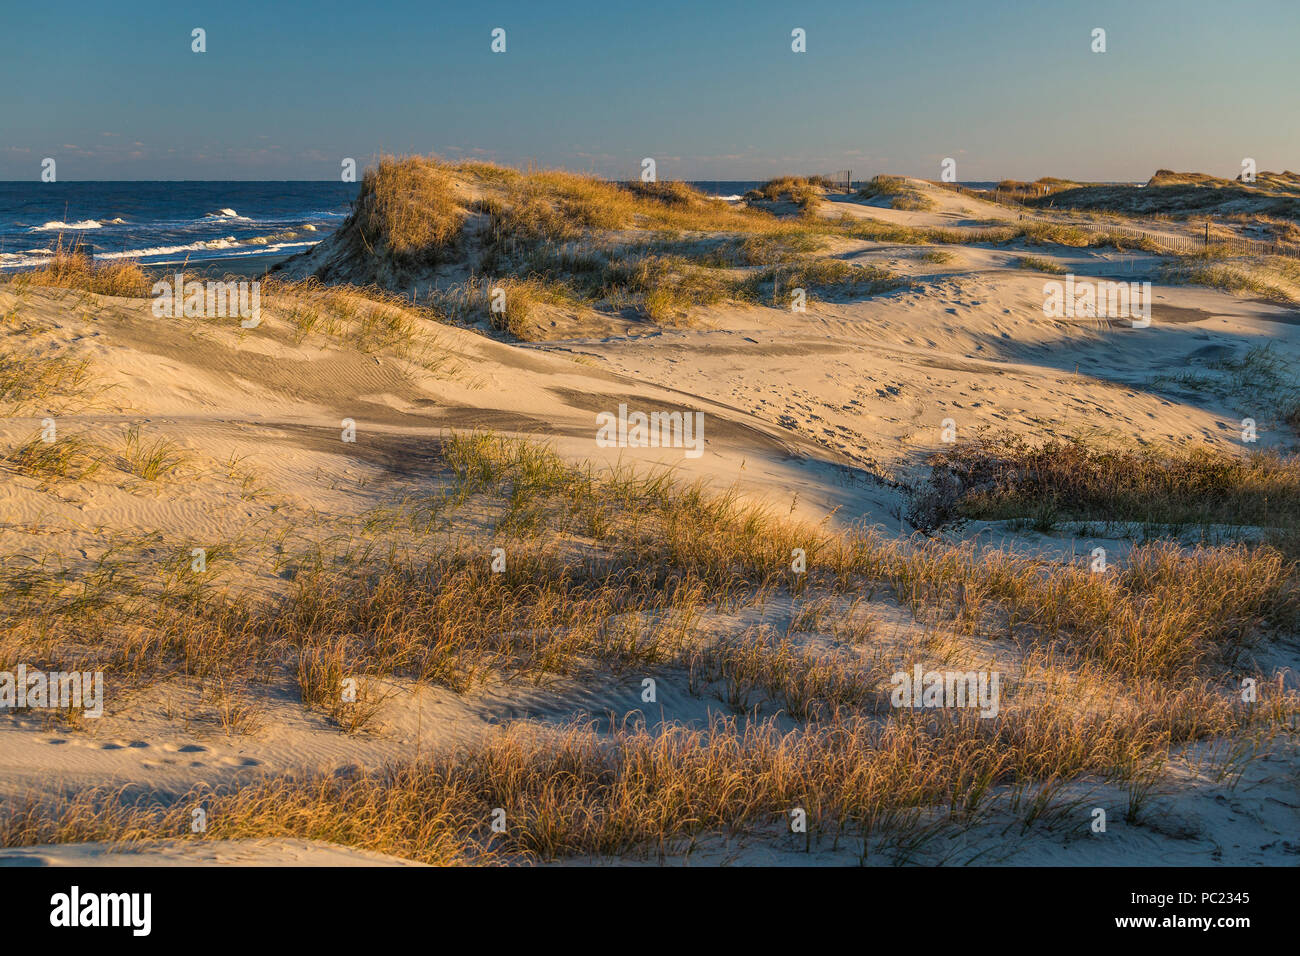 Nel tardo pomeriggio autunno 'magic hour' la luce del sole si diffonde oro su dune di spiaggia e mare di erba, con il surf e cielo all'orizzonte, Outer Banks, NC. Foto Stock